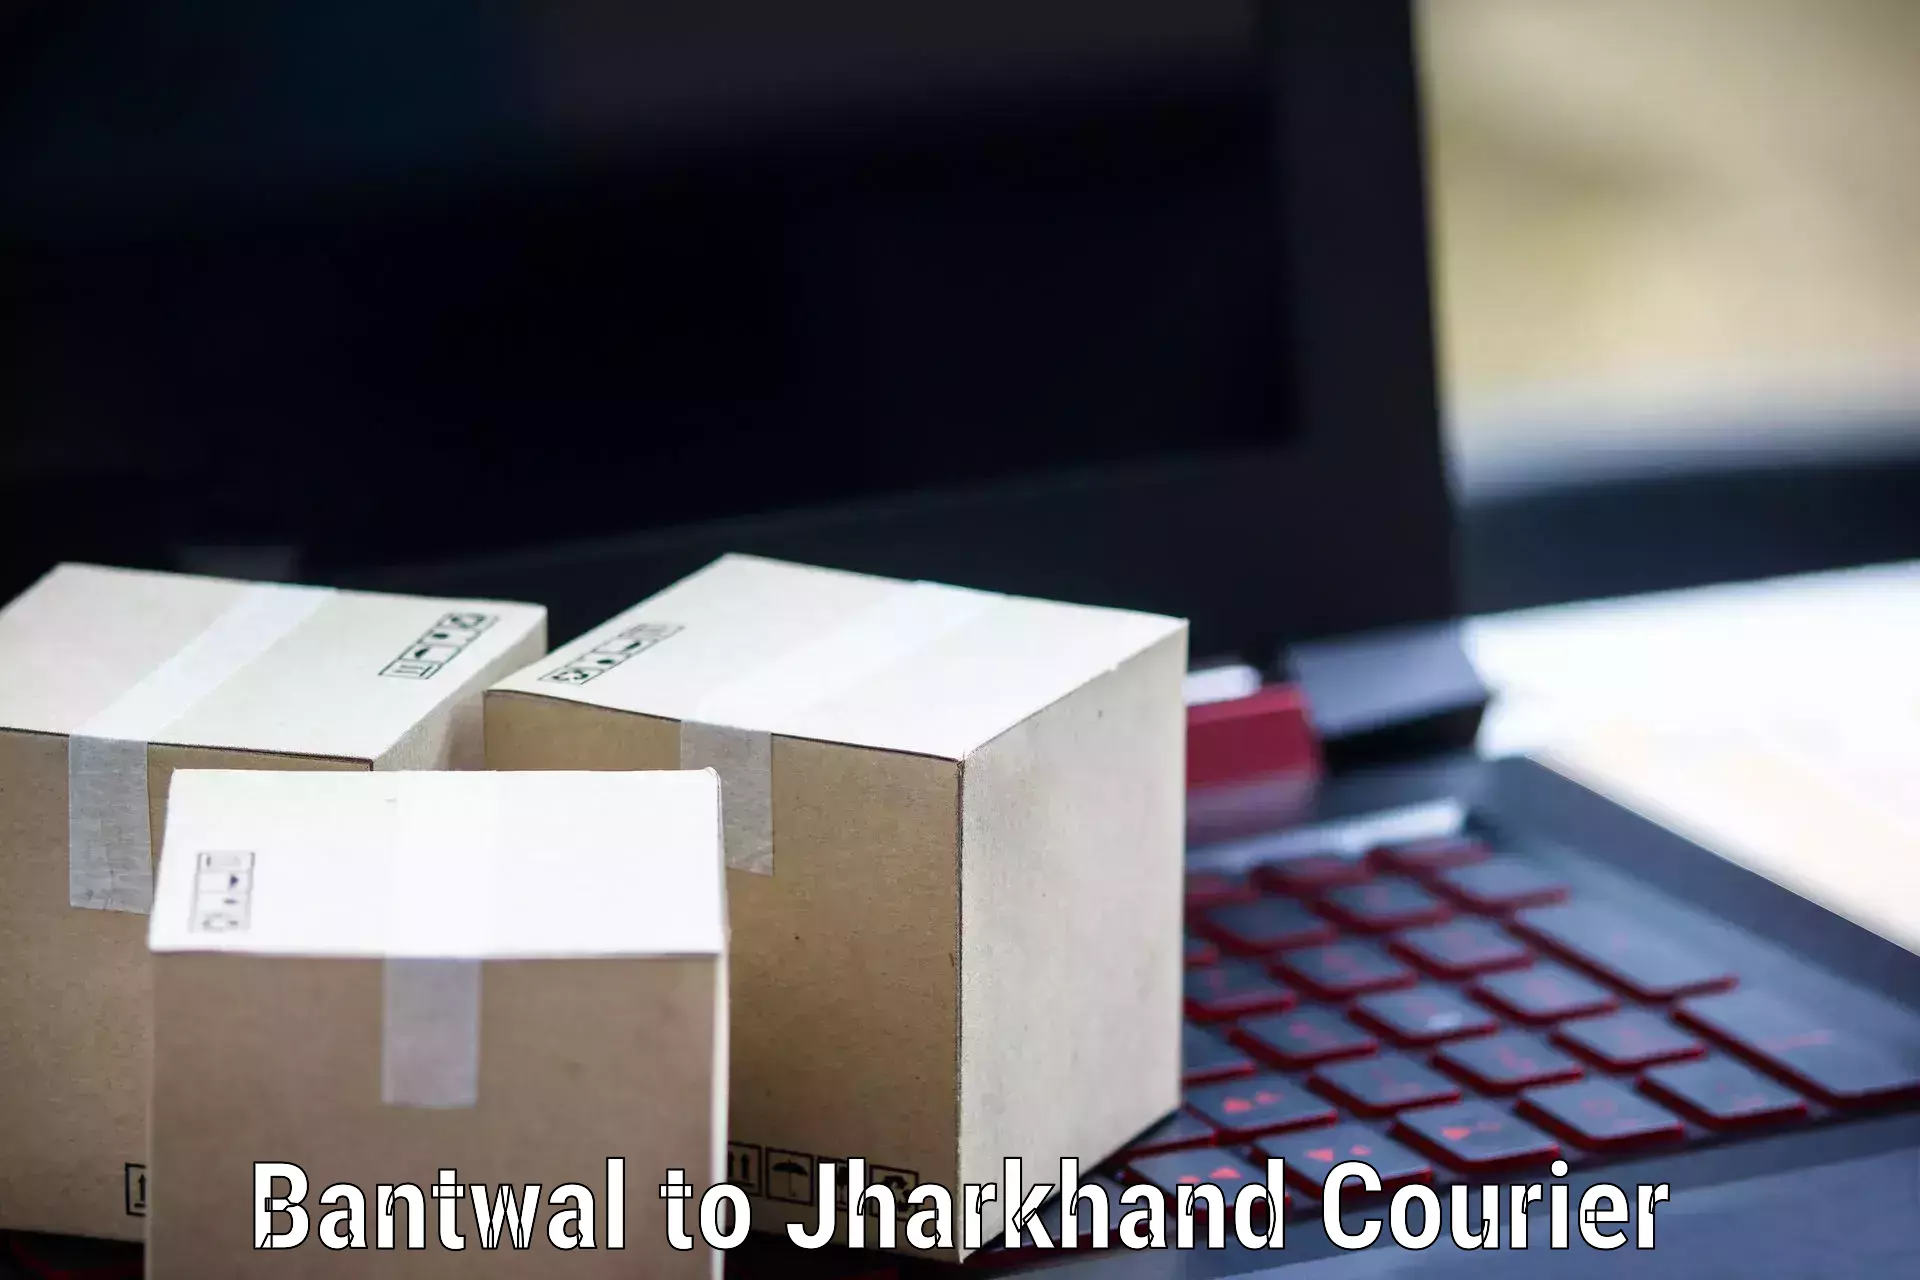 Modern delivery methods Bantwal to Shikaripara